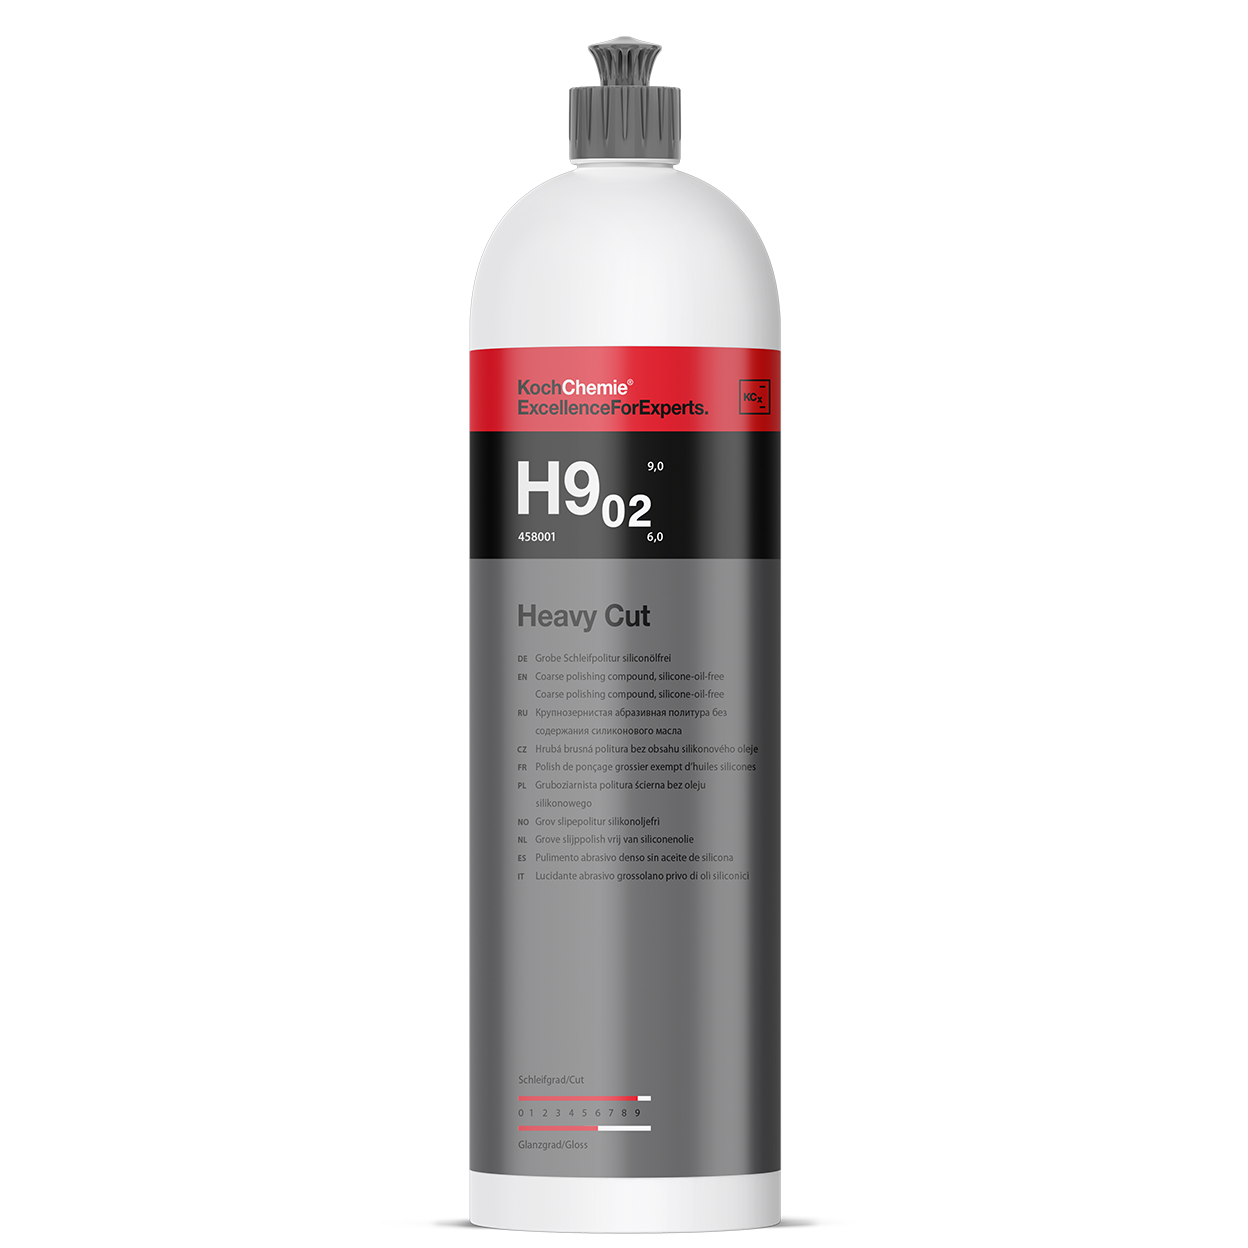 Koch Chemie Heavy Cut H9.02 siliconölfrei 1,0 Liter - Grobe Schleifpolitur